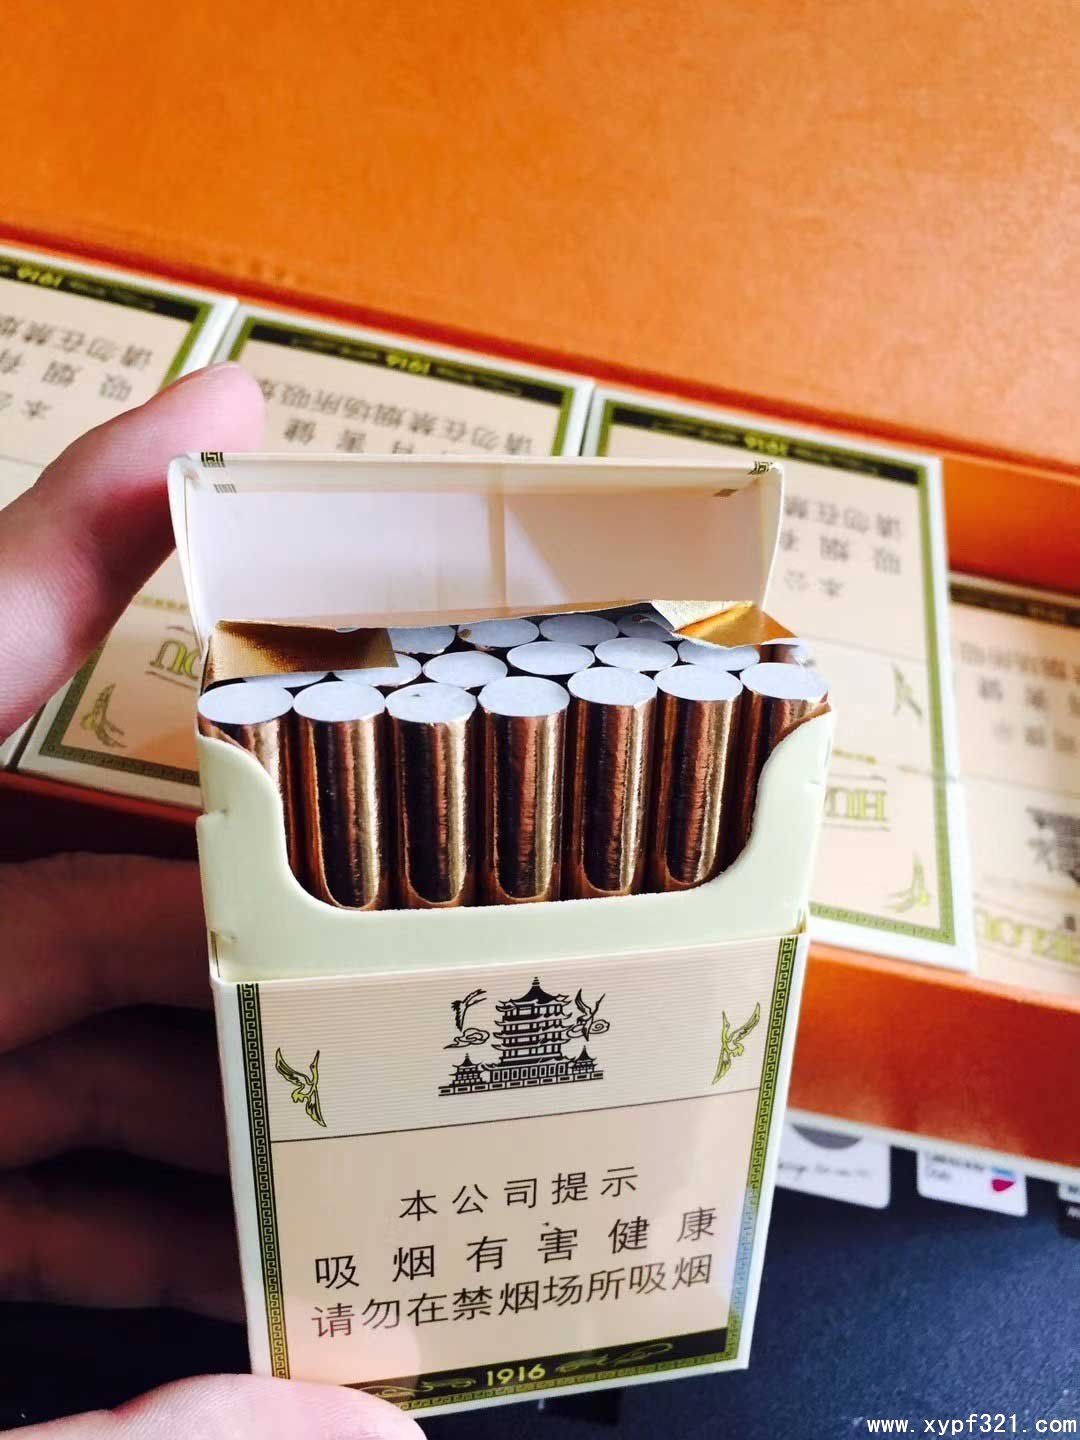 微信卖中华烟一条180元@最受欢迎的4款“短支”